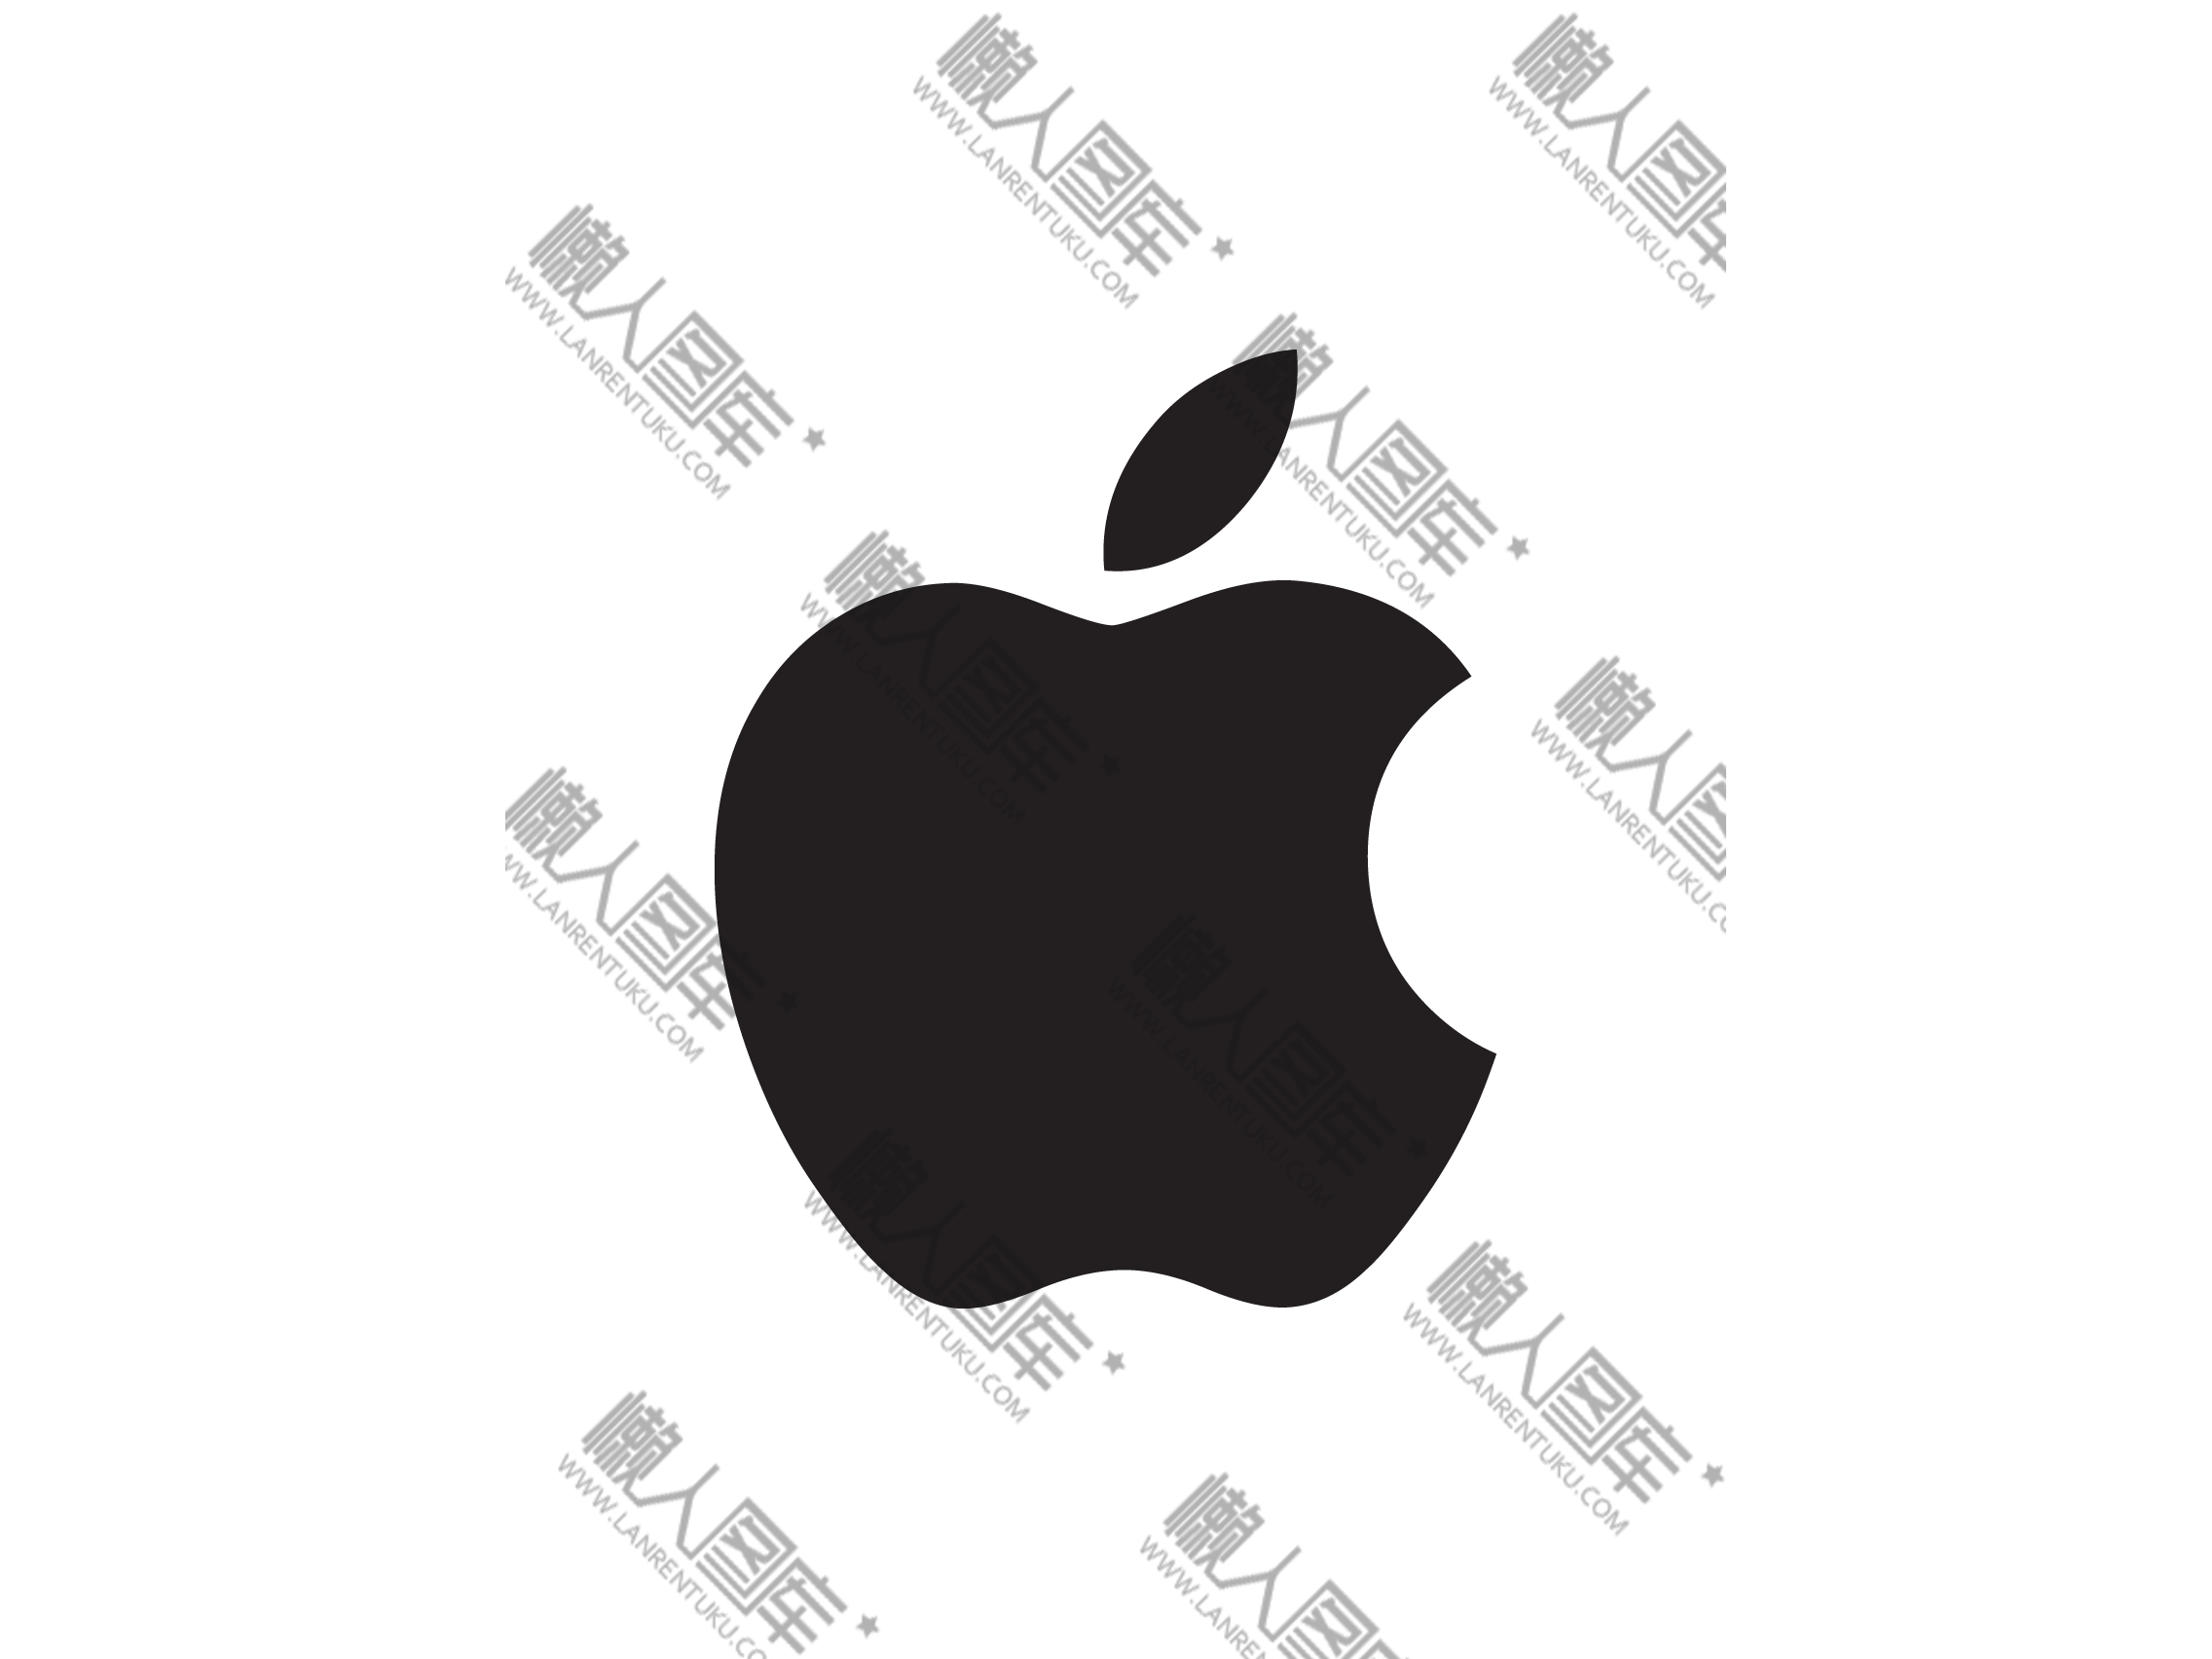 苹果黑色标志复制图片